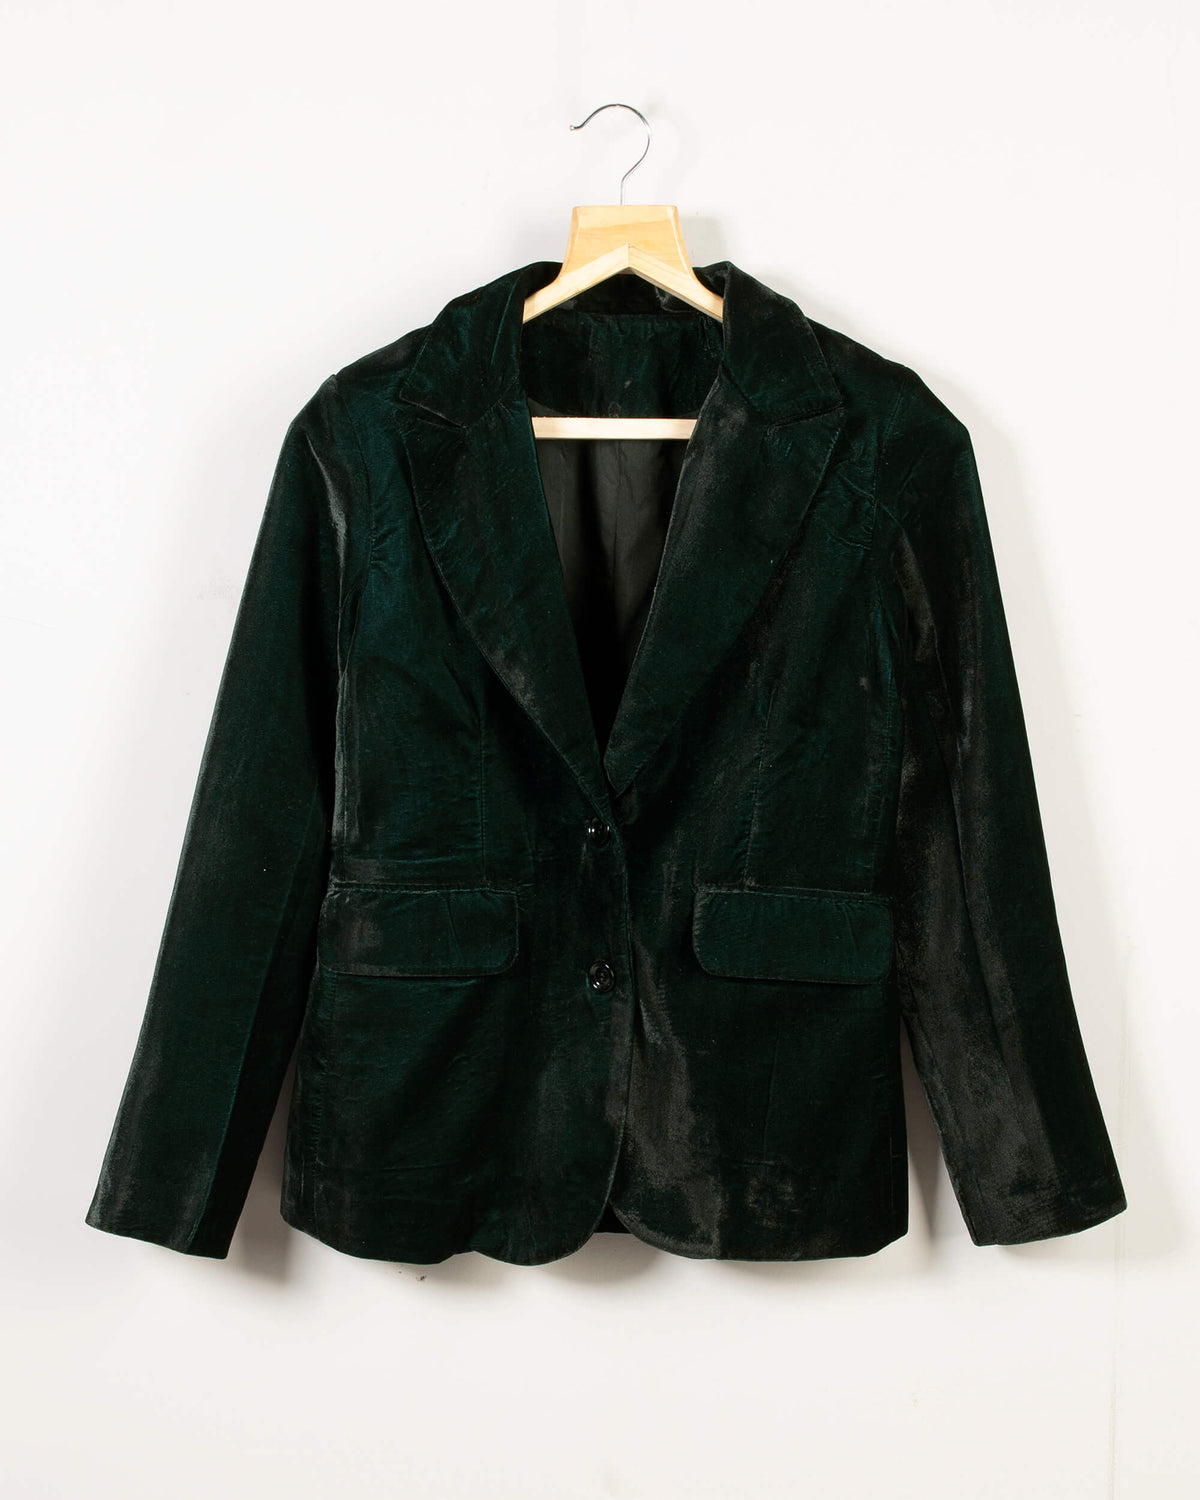 Velvet Jacket for Women - Buy Stylish Velvet Blazer at Best Price